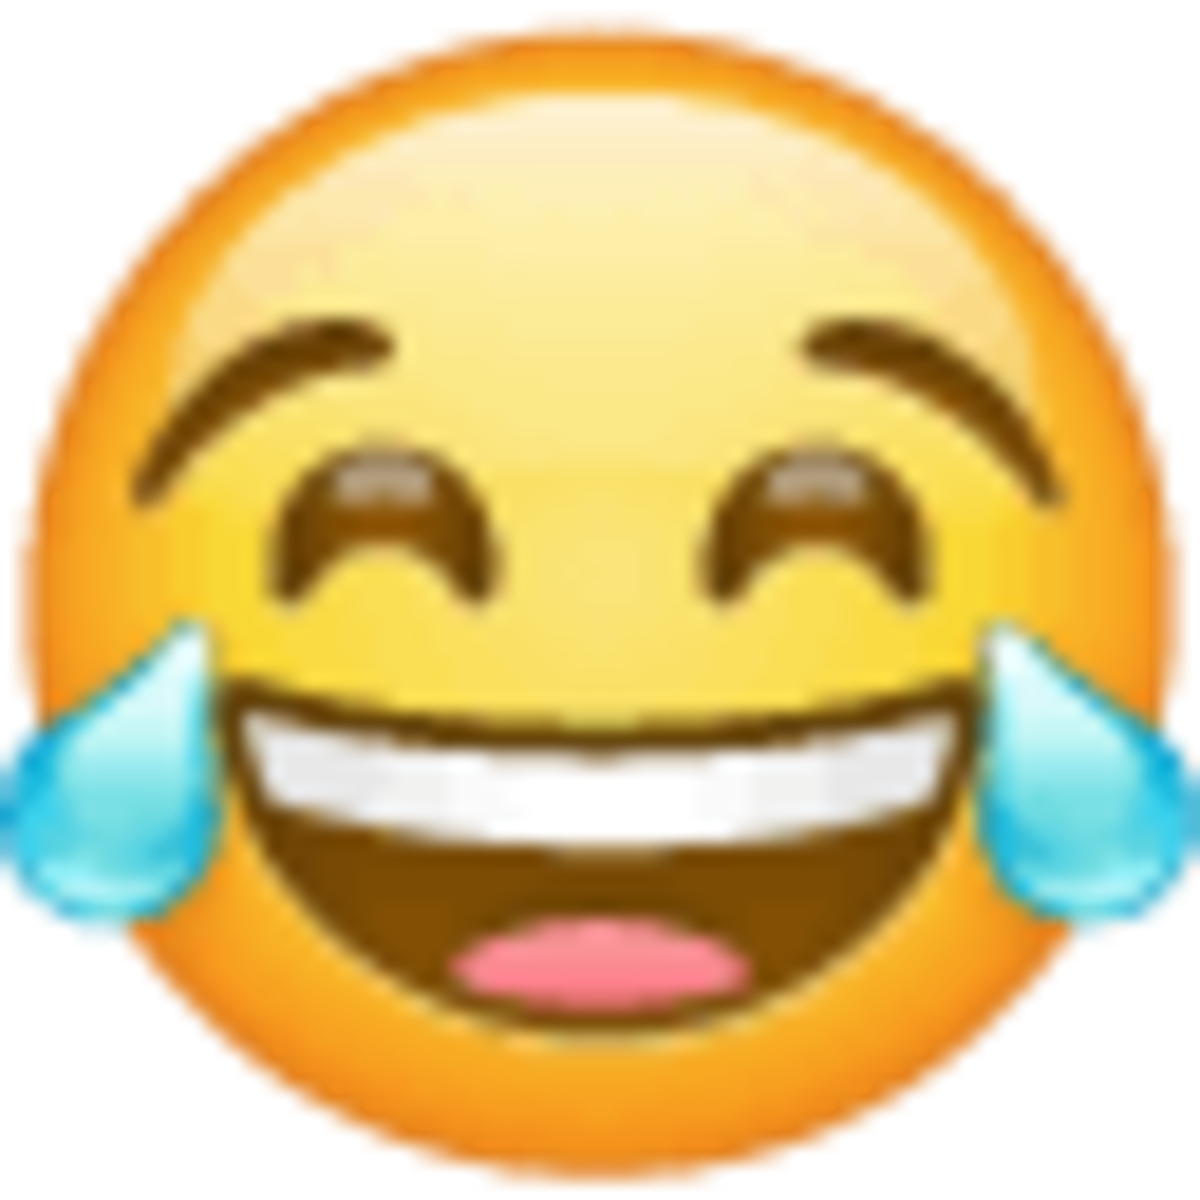 Emoji 1f602, cara llorando de risa